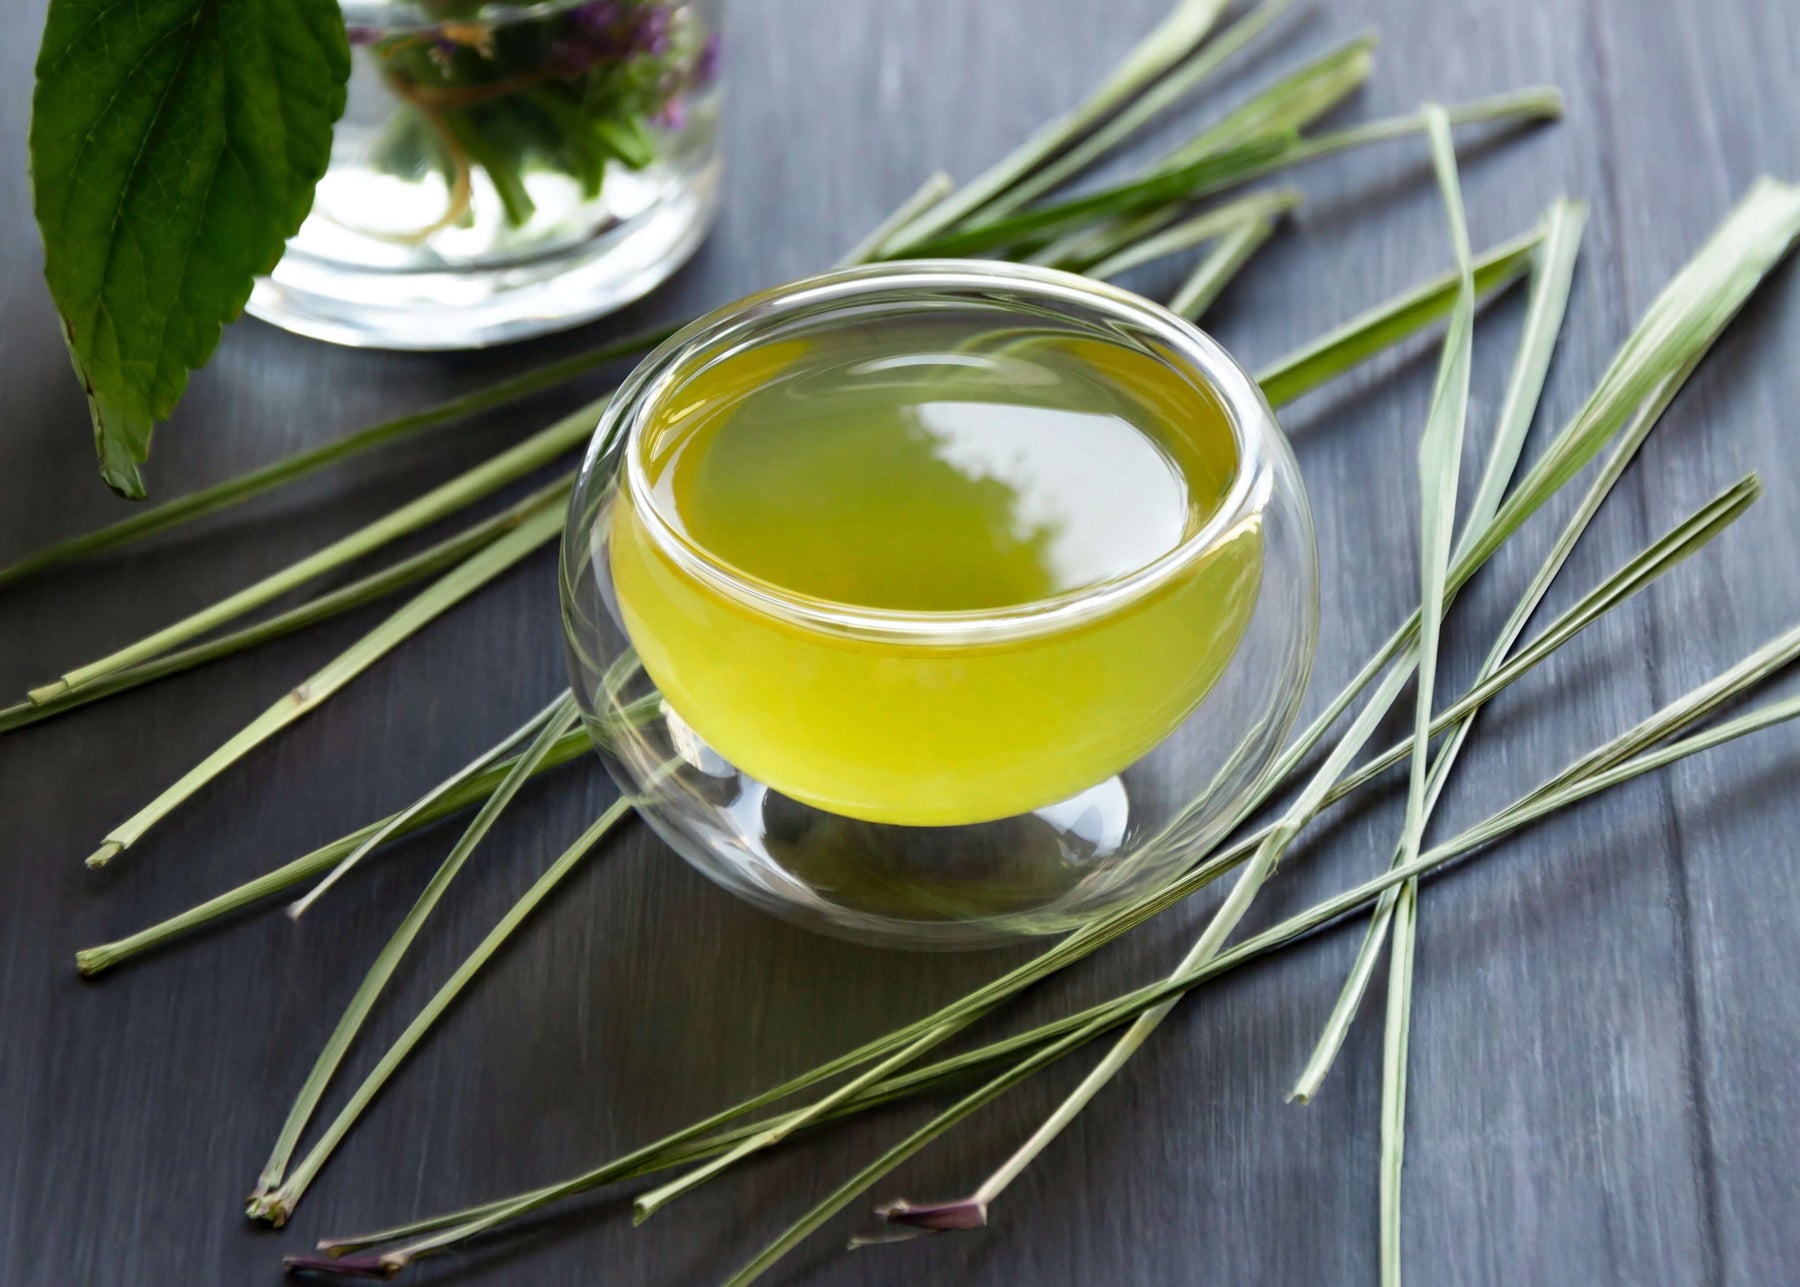 คุณประโยชน์ 5 ประการของ “Lemongrass Ginger” ชาสมุนไพรตะไคร้ขิง หากคุณดื่มเป็นประจำในทุกๆเช้า